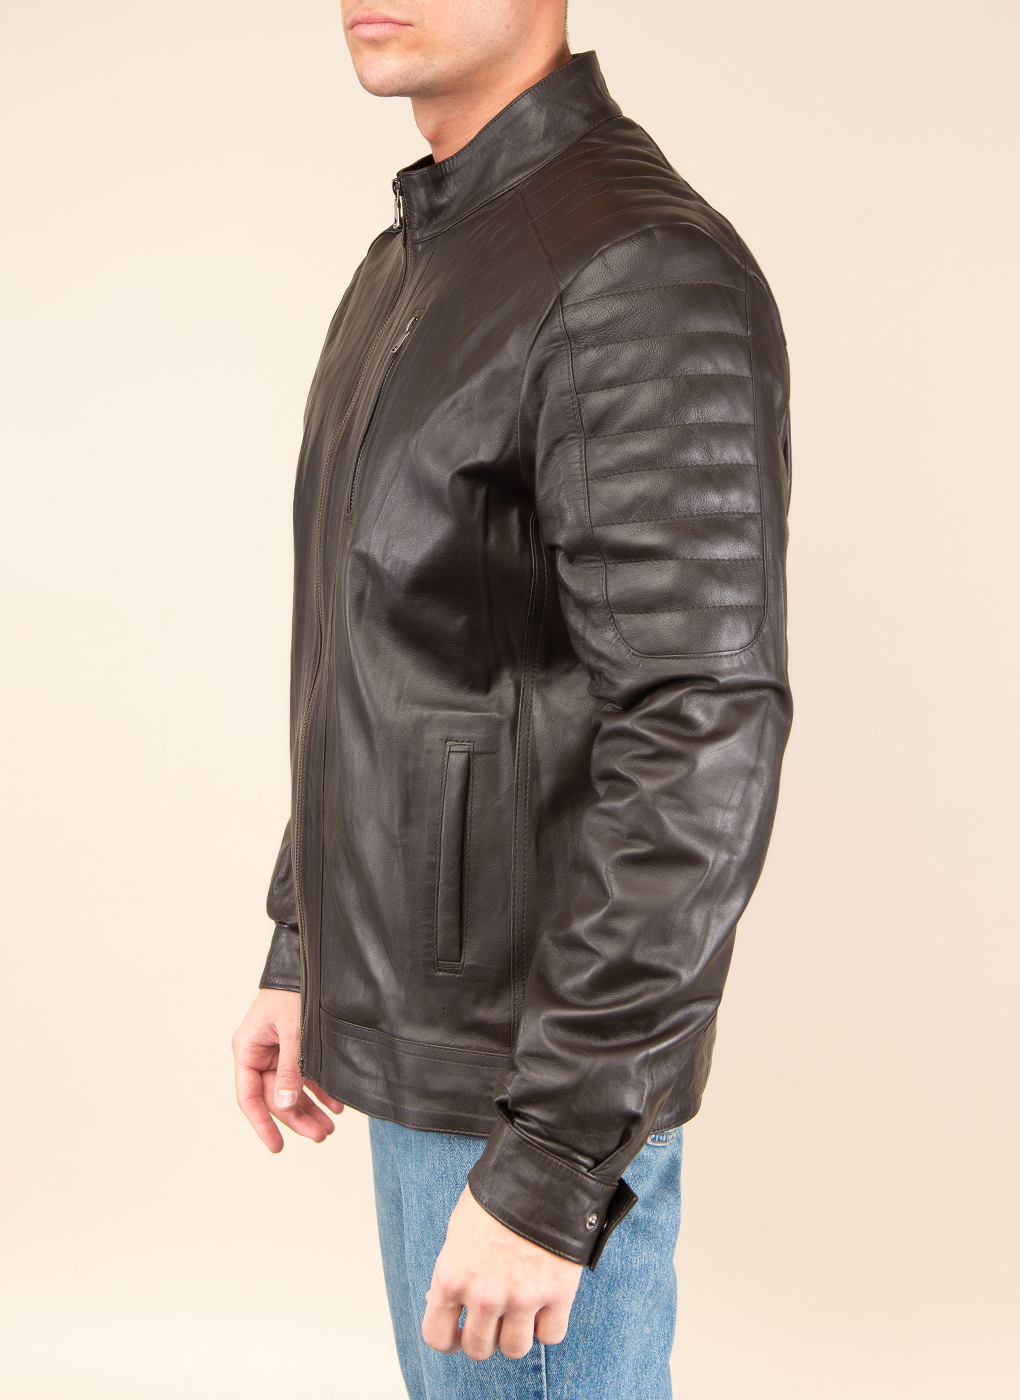 Кожаная куртка мужская Каляев 48416 коричневая 46 RU